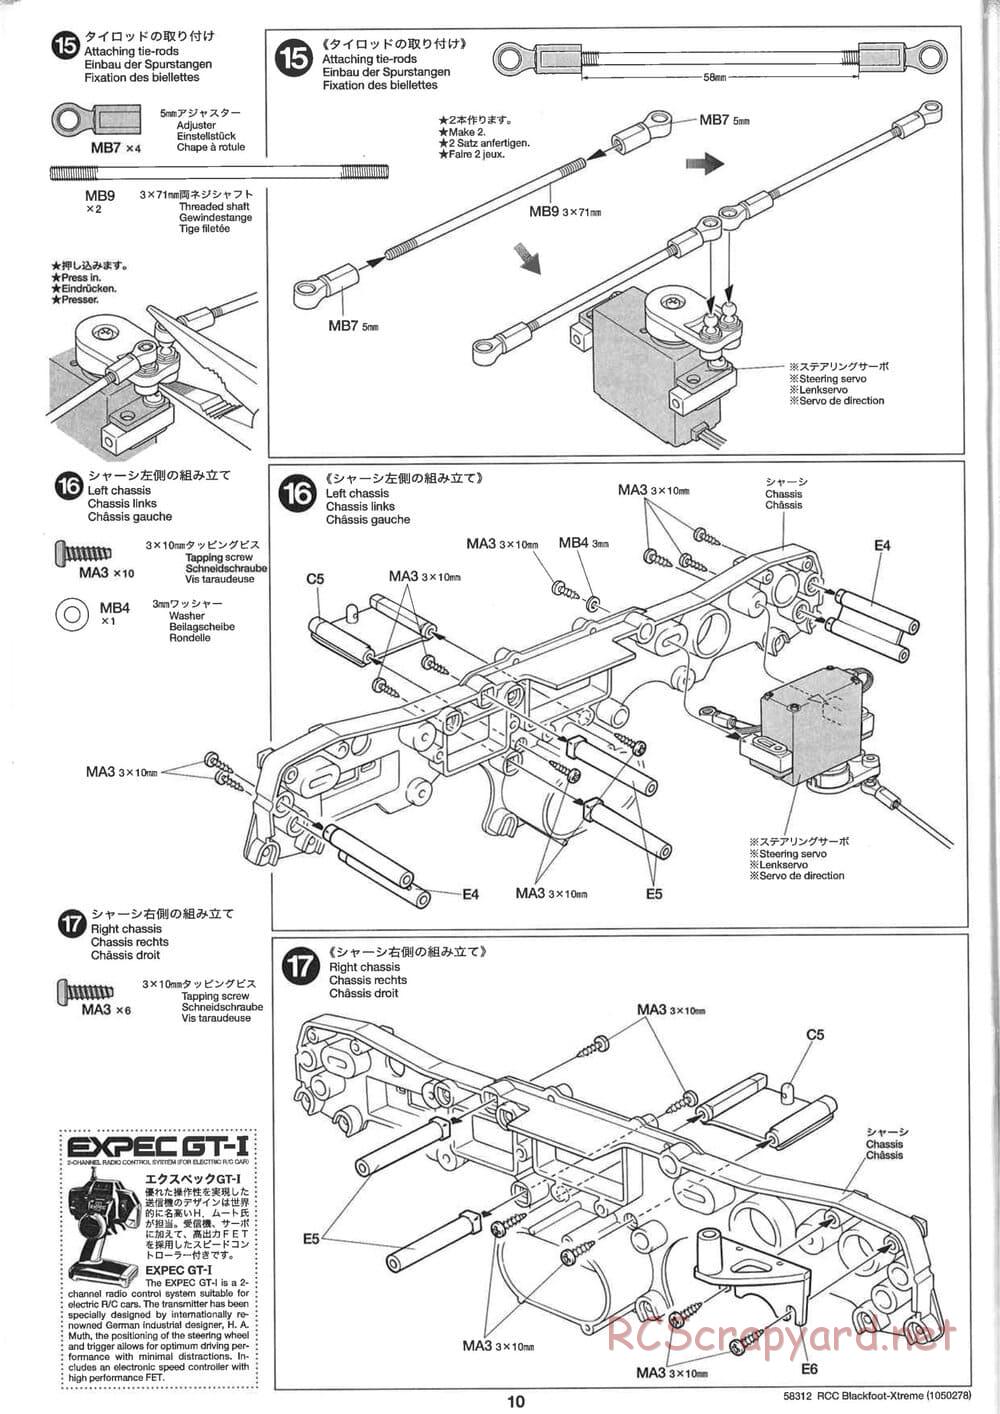 Tamiya - Blackfoot Xtreme - WT-01 Chassis - Manual - Page 10